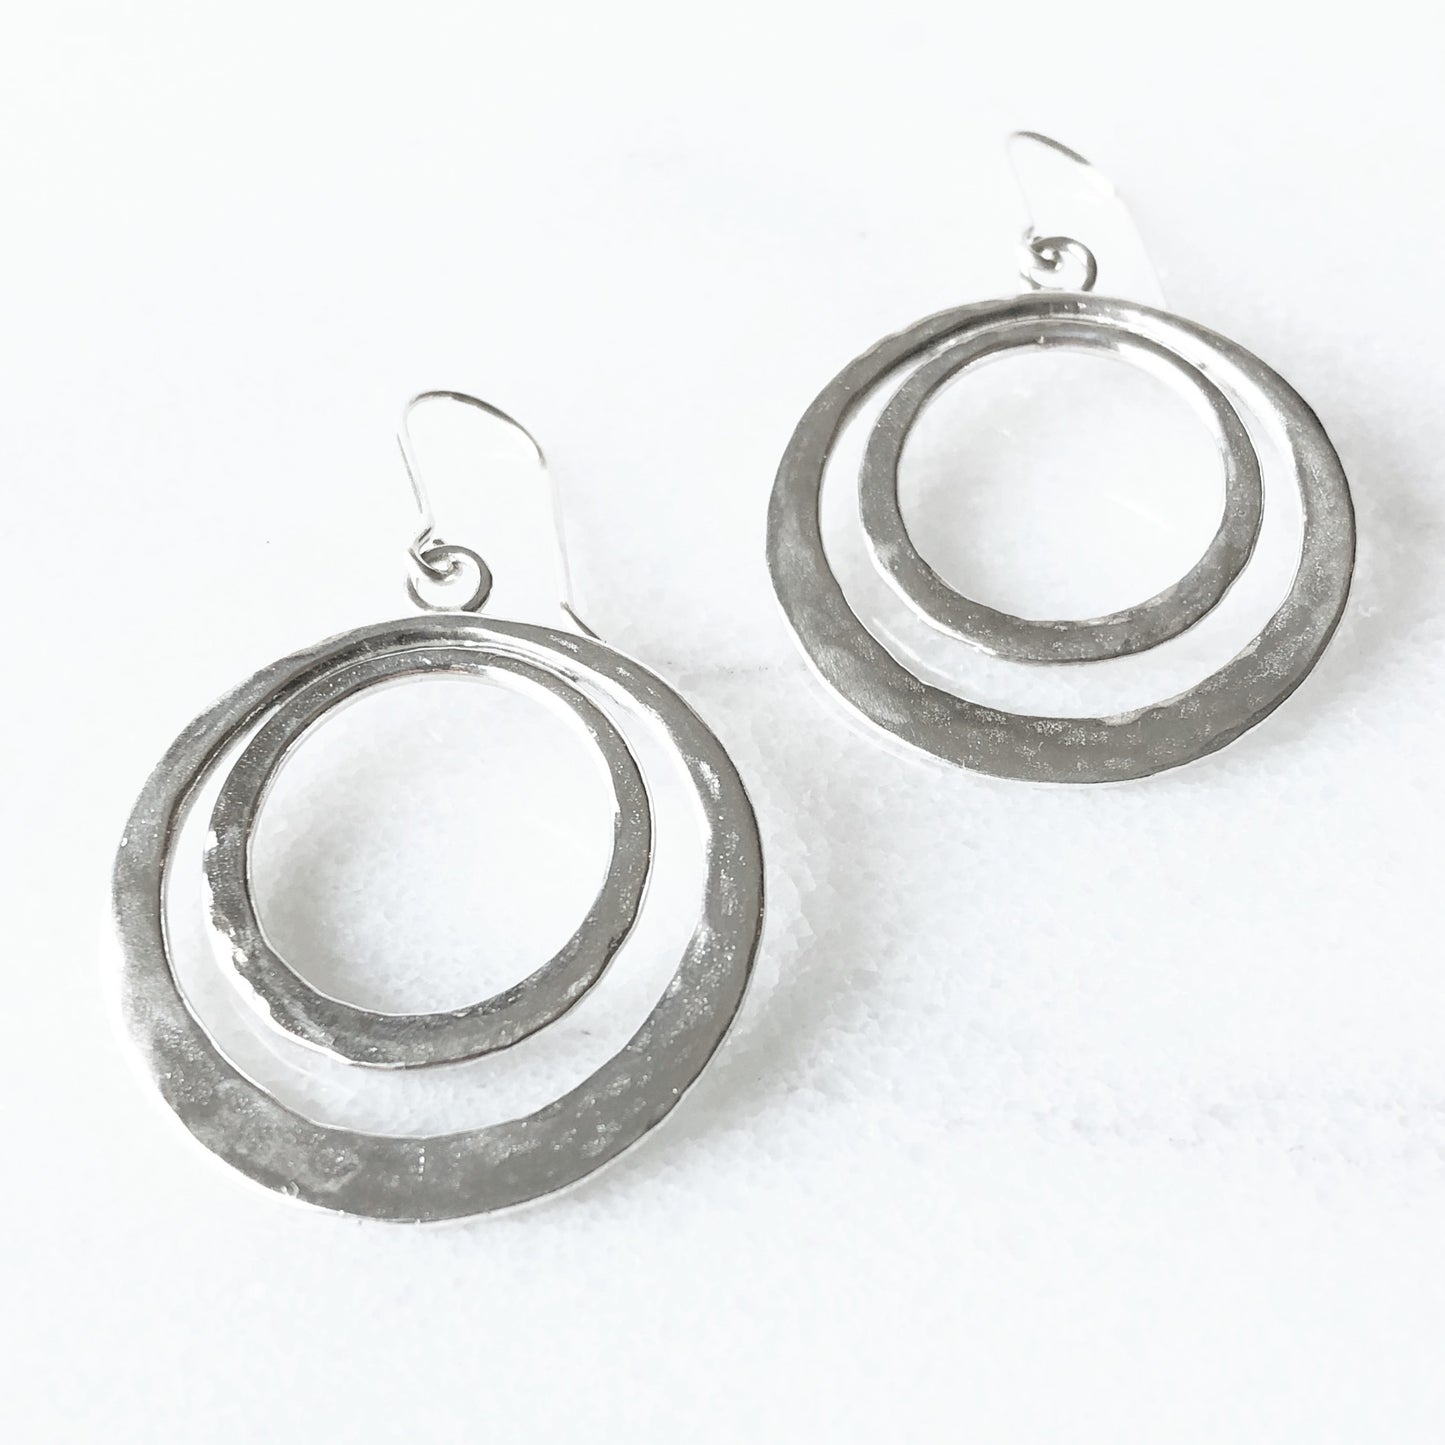 Modern boho double hoop earrings in sterling silver